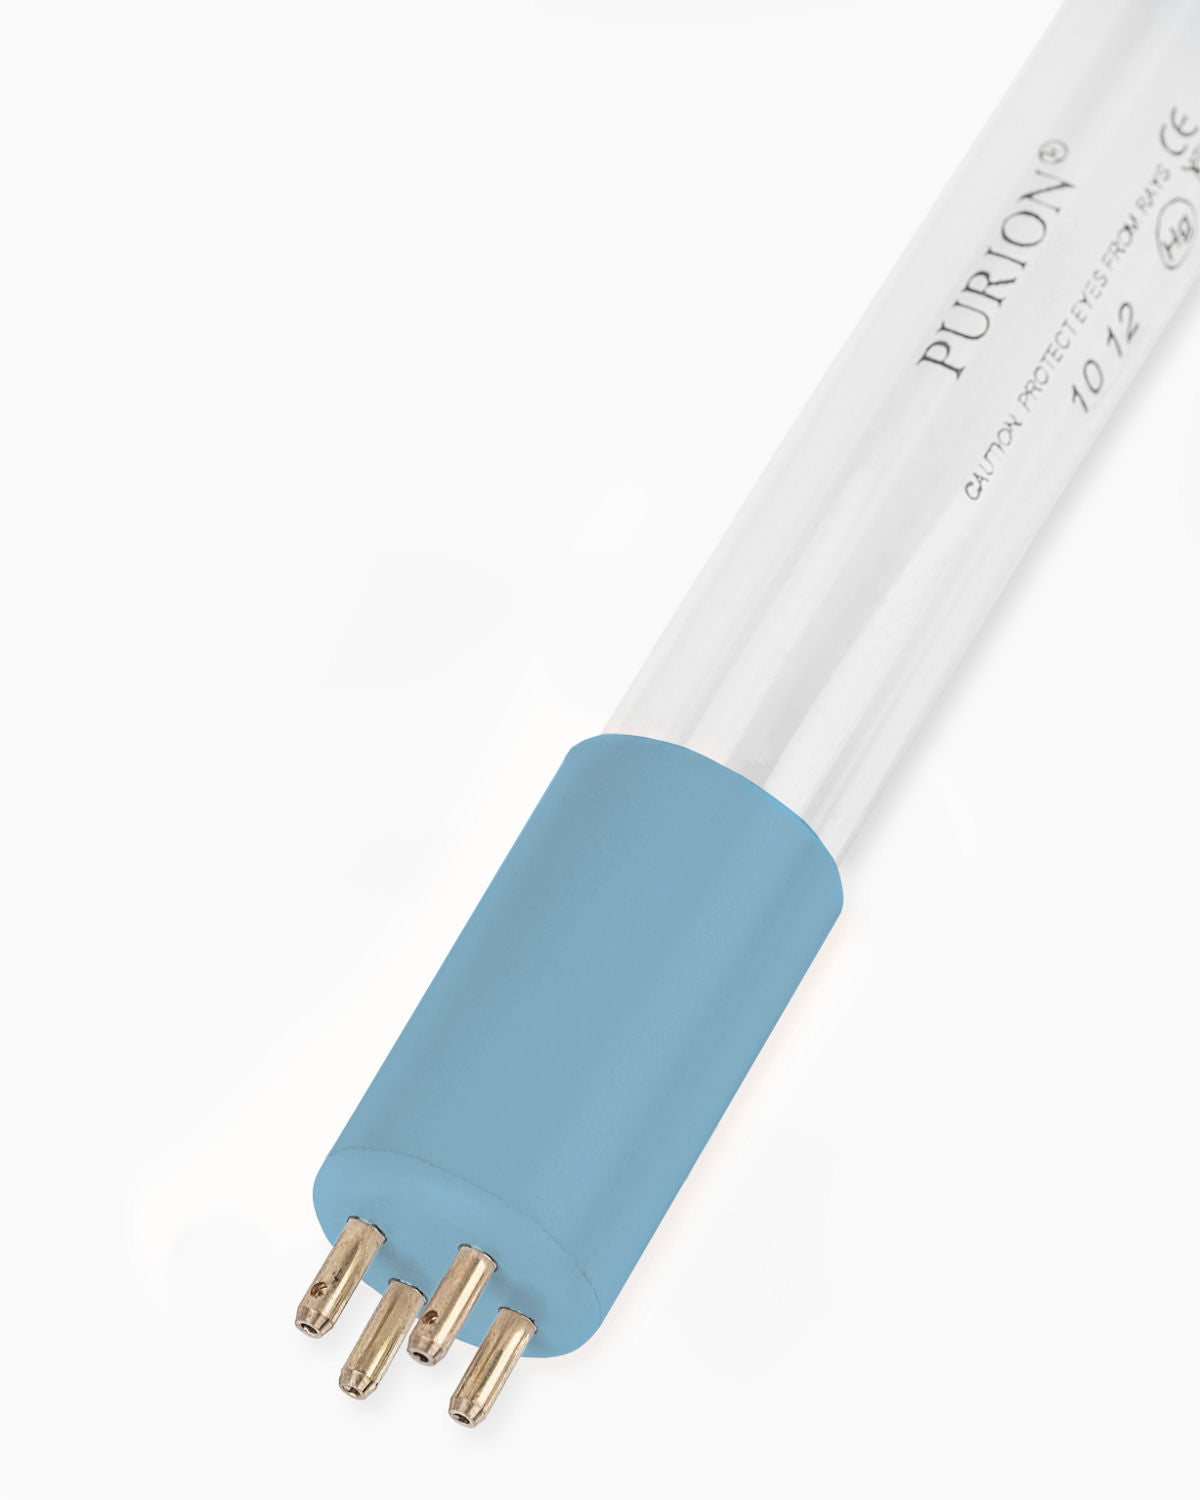 Eine PURION UVC-Lampe 48 W Ersatzlampe für UV-Desinfektionssysteme, garantiert für eine lange Lebensdauer, mit blauem Licht, vor weißem Hintergrund.